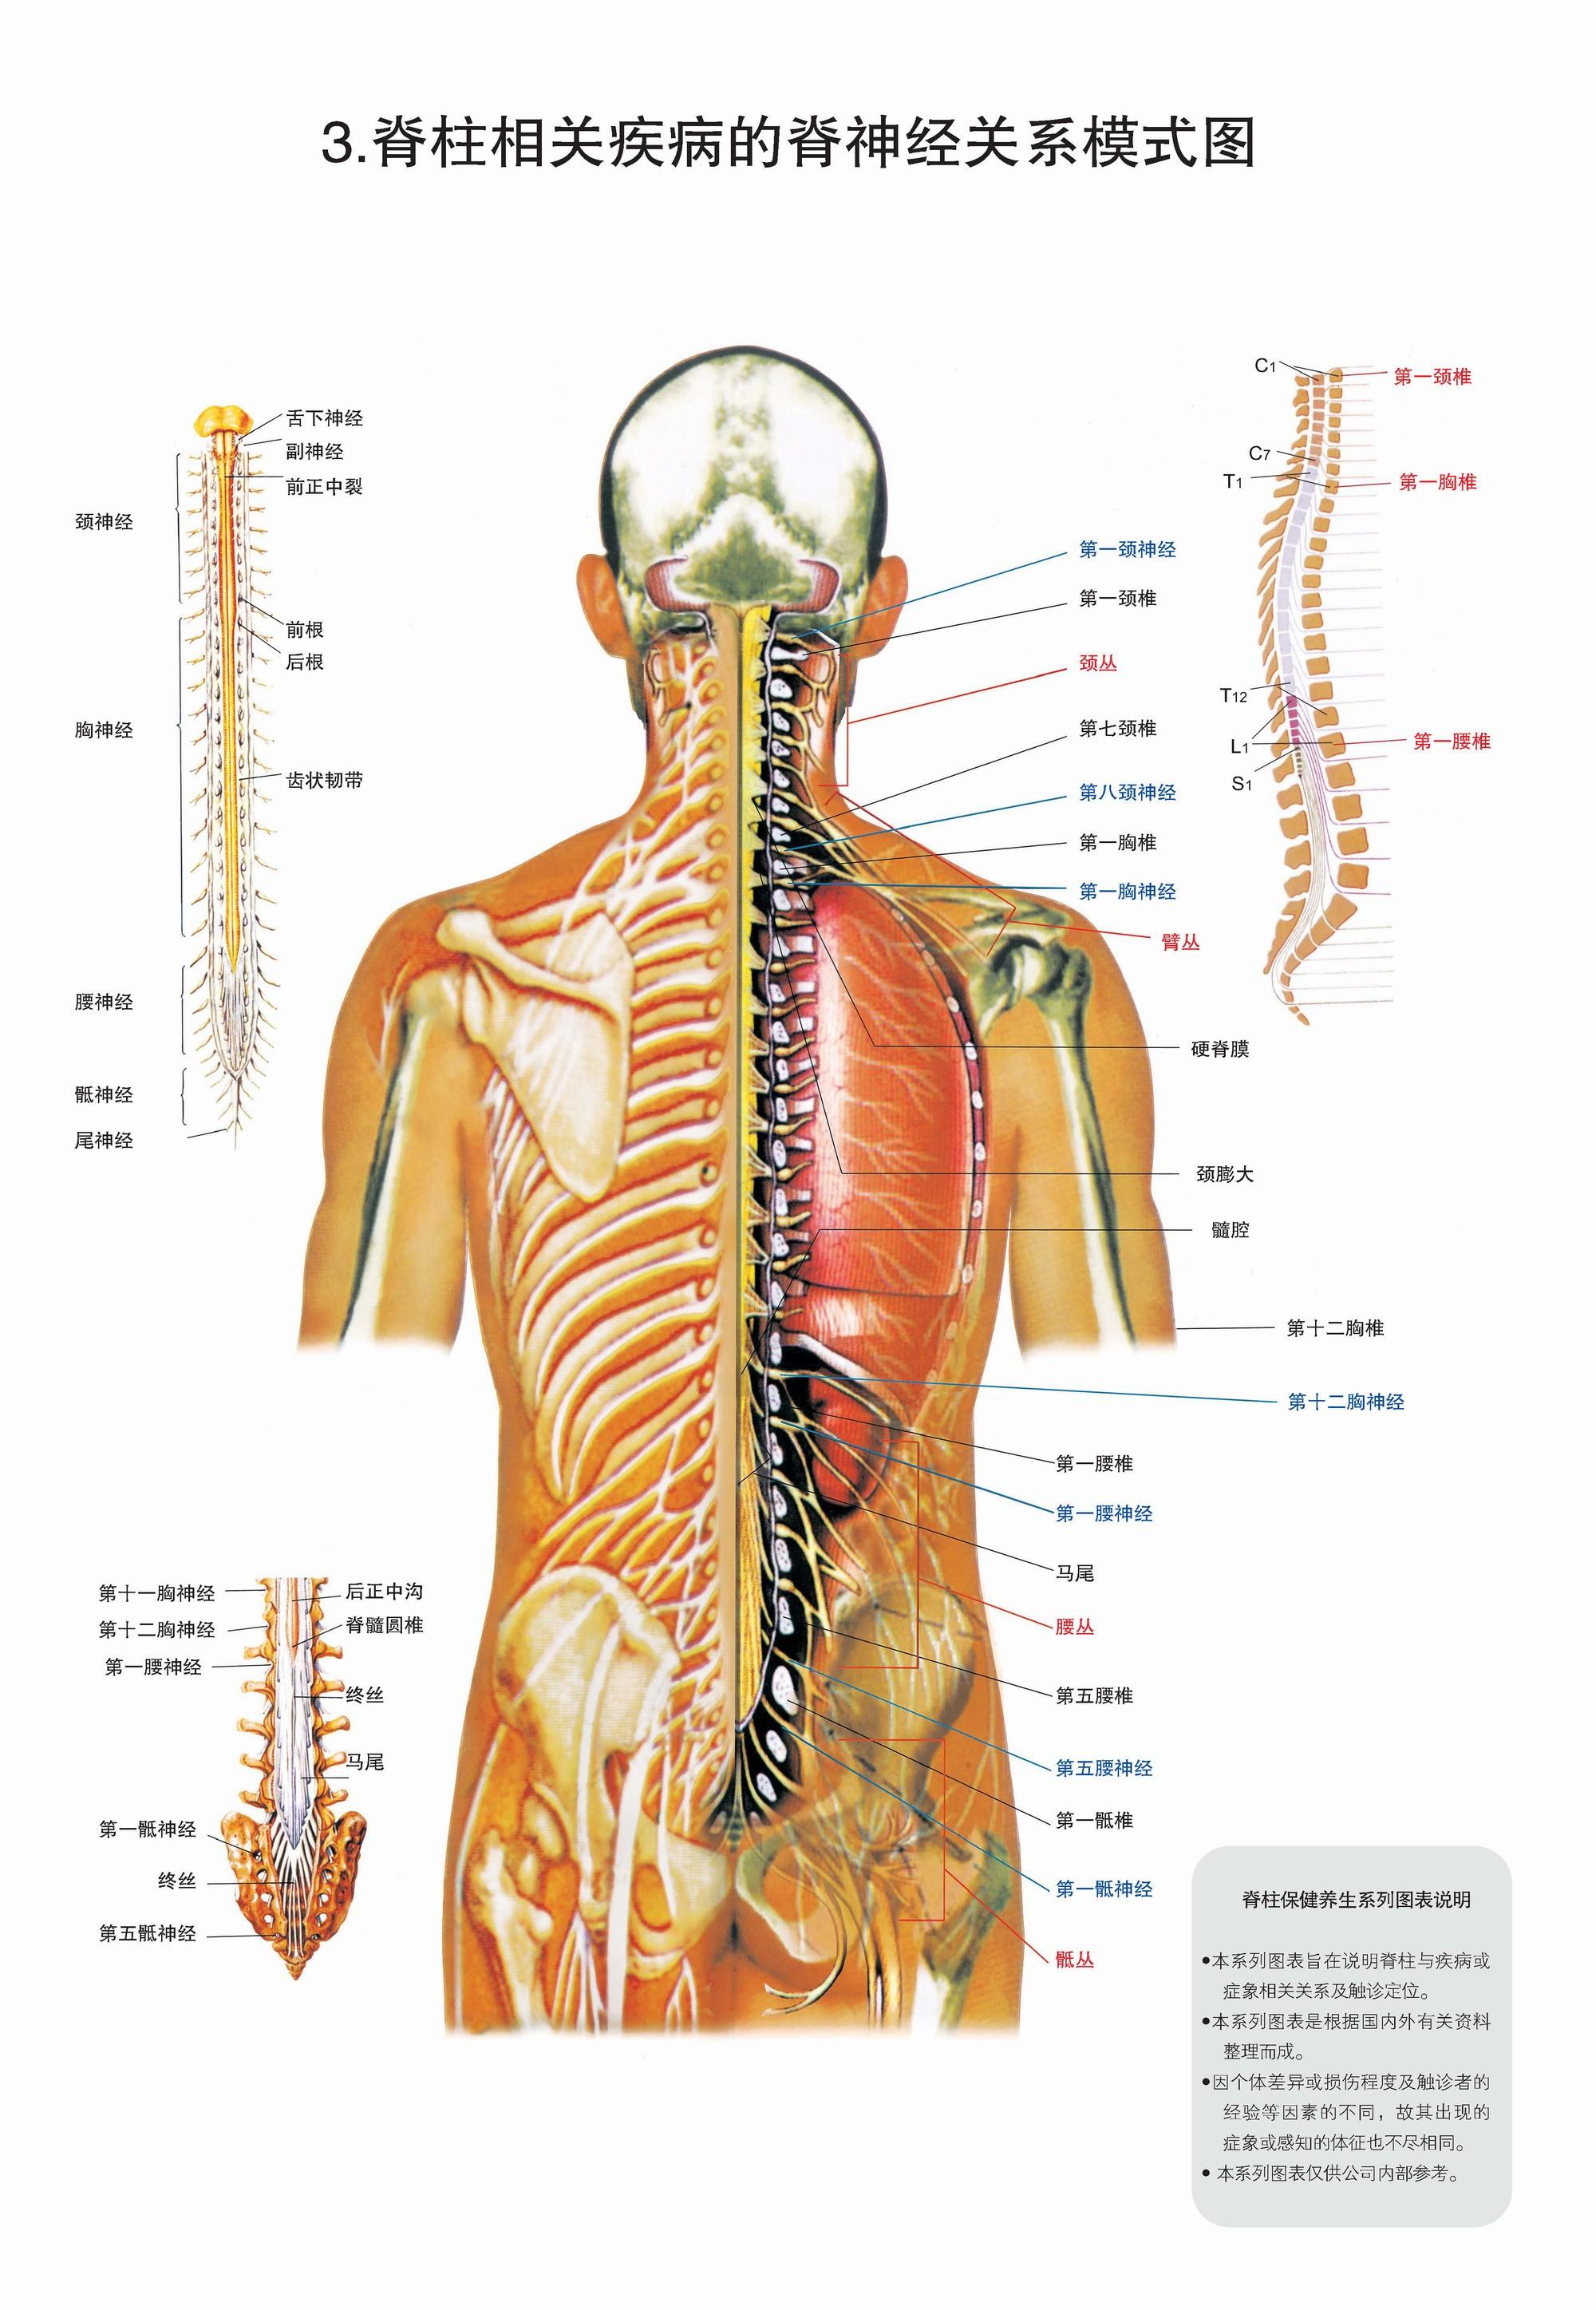 3,脊柱相关疾病的脊神经关系模式图 4,脊柱相关疾病的自主神经关系